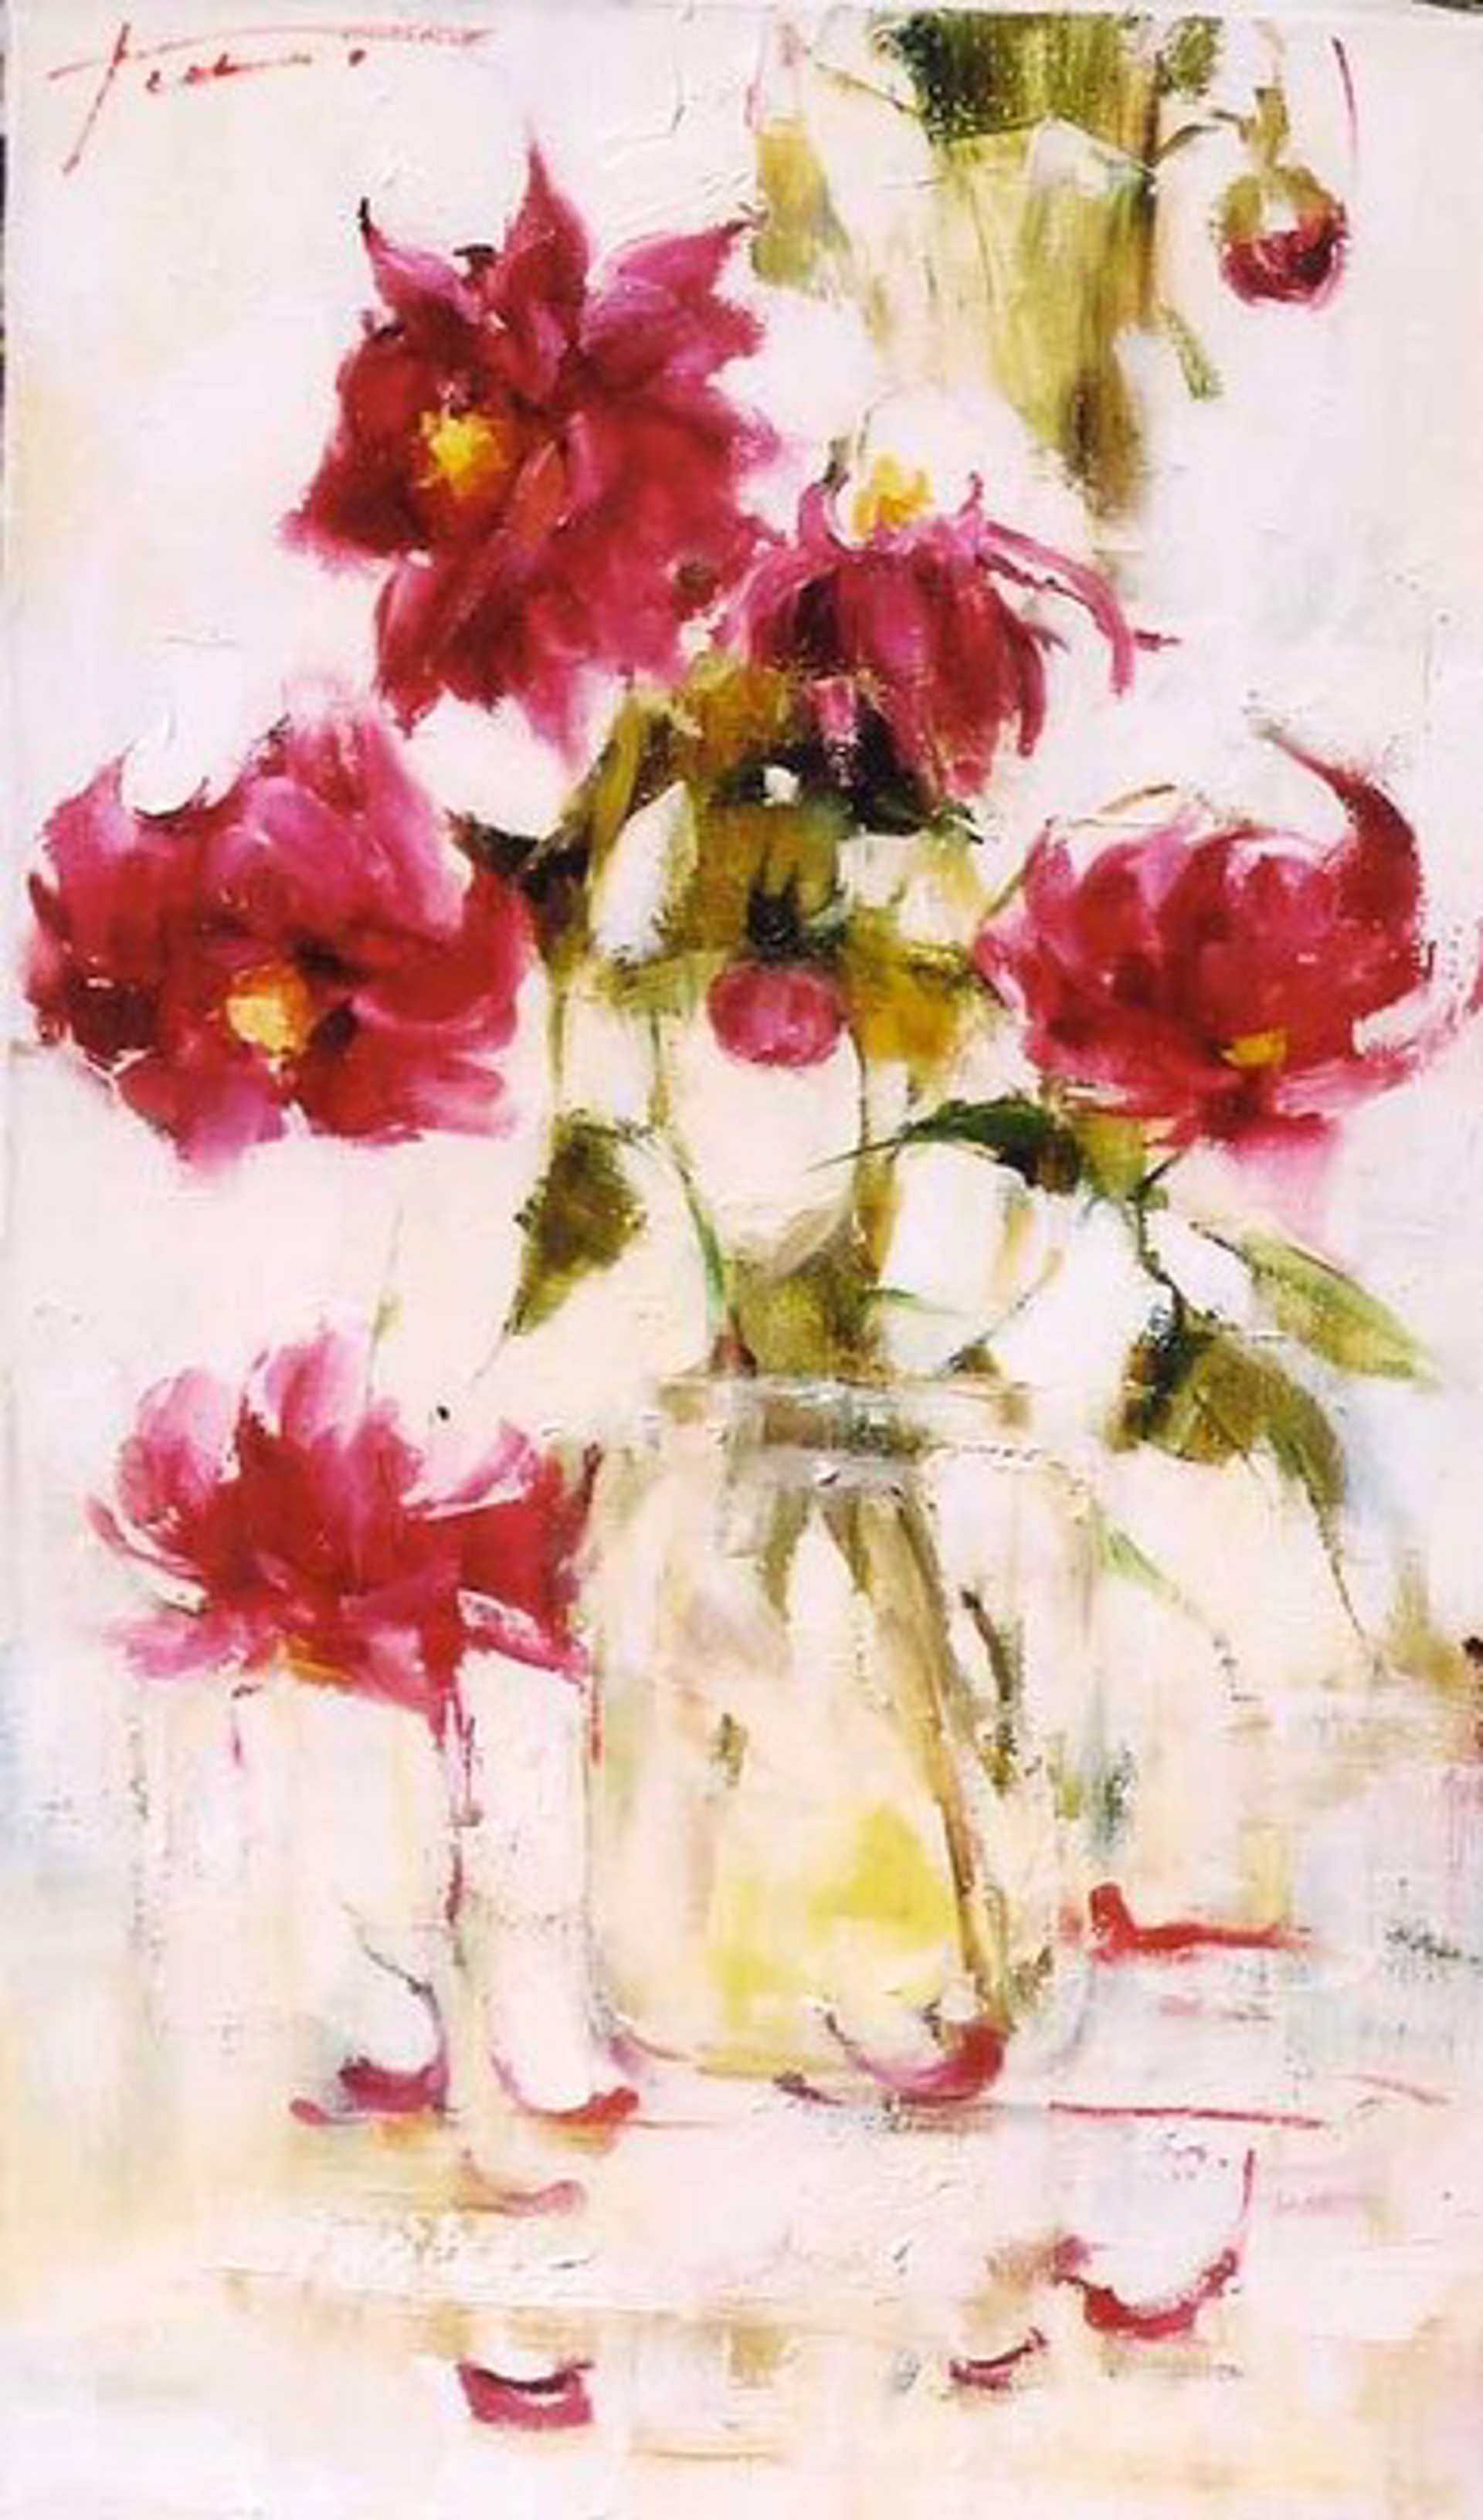 Chinese Roses by Yana Golubyatnikova